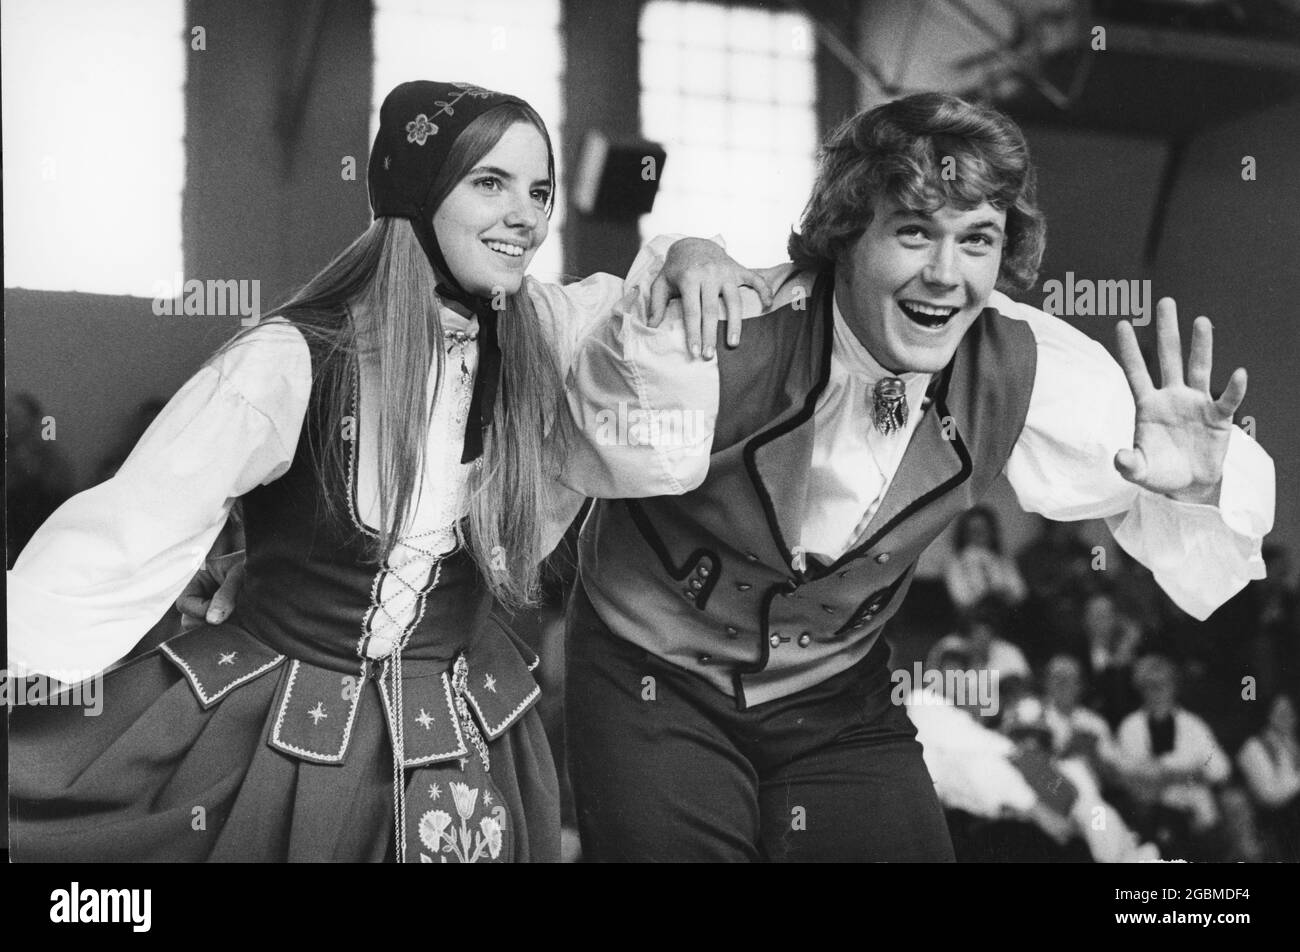 Stoughton Wisconsin USA, 1975: De jeunes danseurs de vêtements traditionnels norvégiens exécutent la danse traditionnelle norvégienne pendant un programme scolaire sur l'héritage norvégien de la ville. ©Bob Daemmrich Banque D'Images